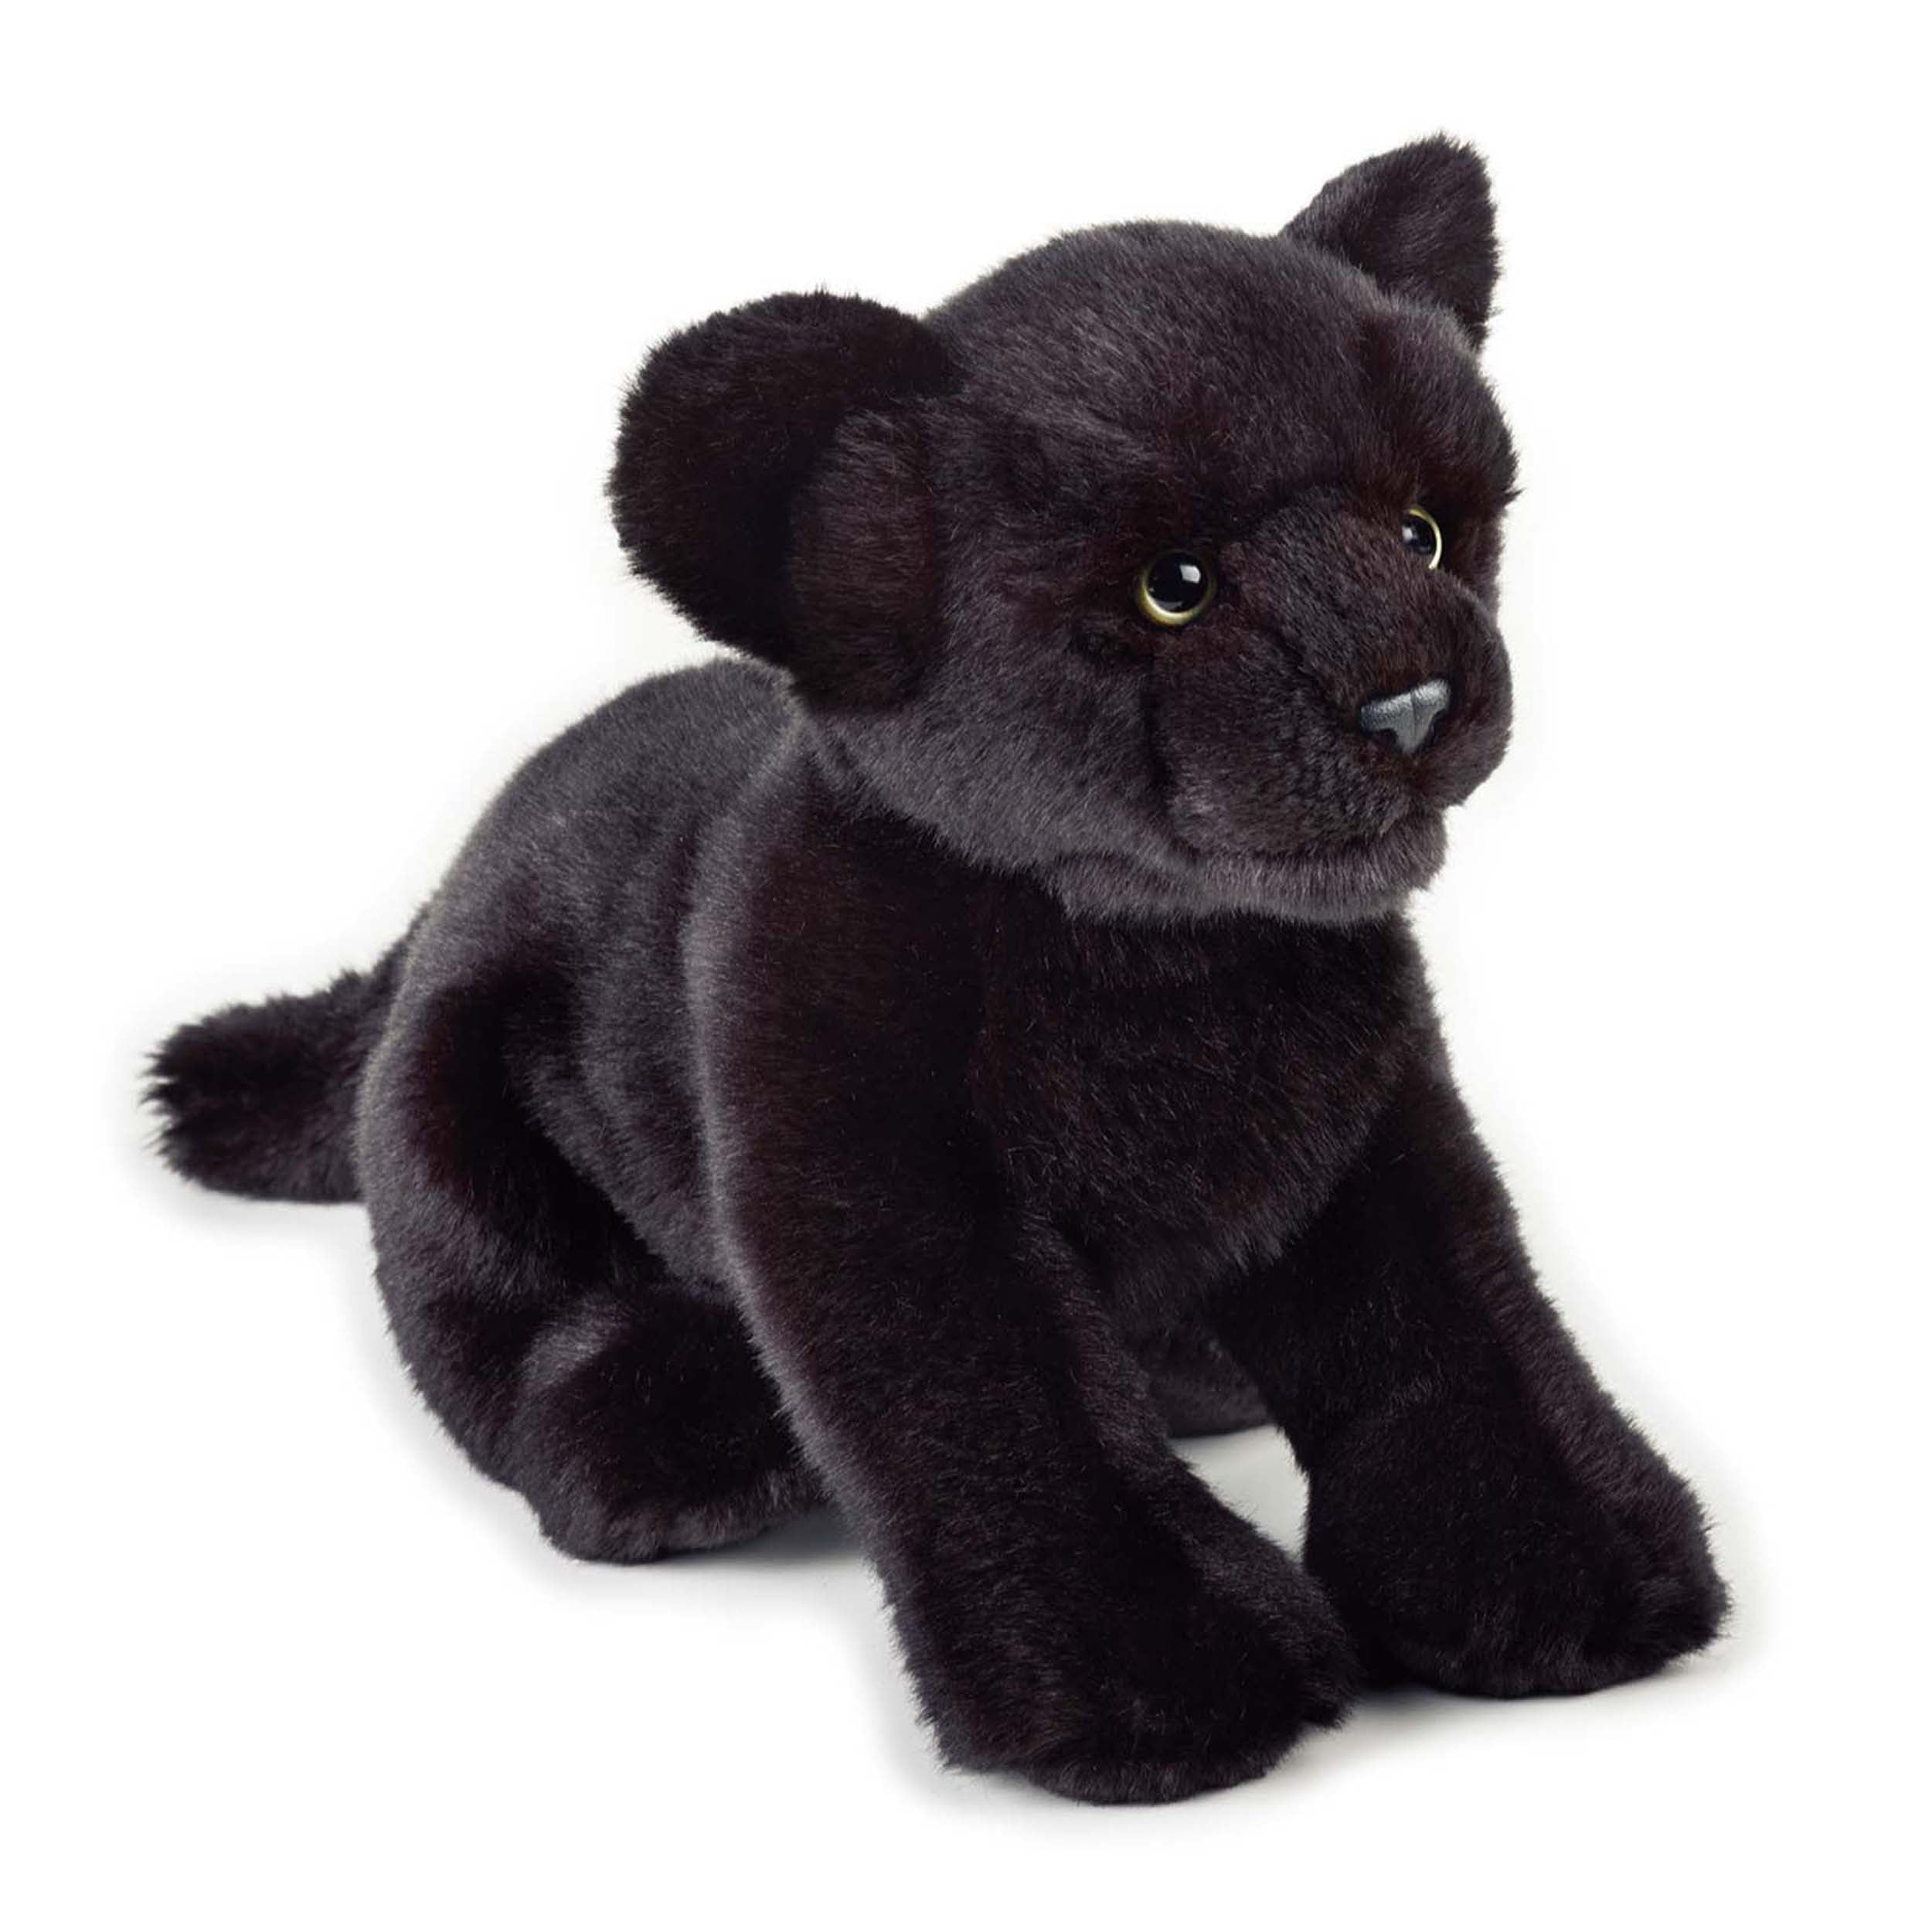 Мягкие игрушки животных купить. Leosco игрушка пантера. Плюшевая черная пантера. Gulliver черная пантера 2000 плюш. Мягкая игрушка Wild Republic черная пантера 28 см.